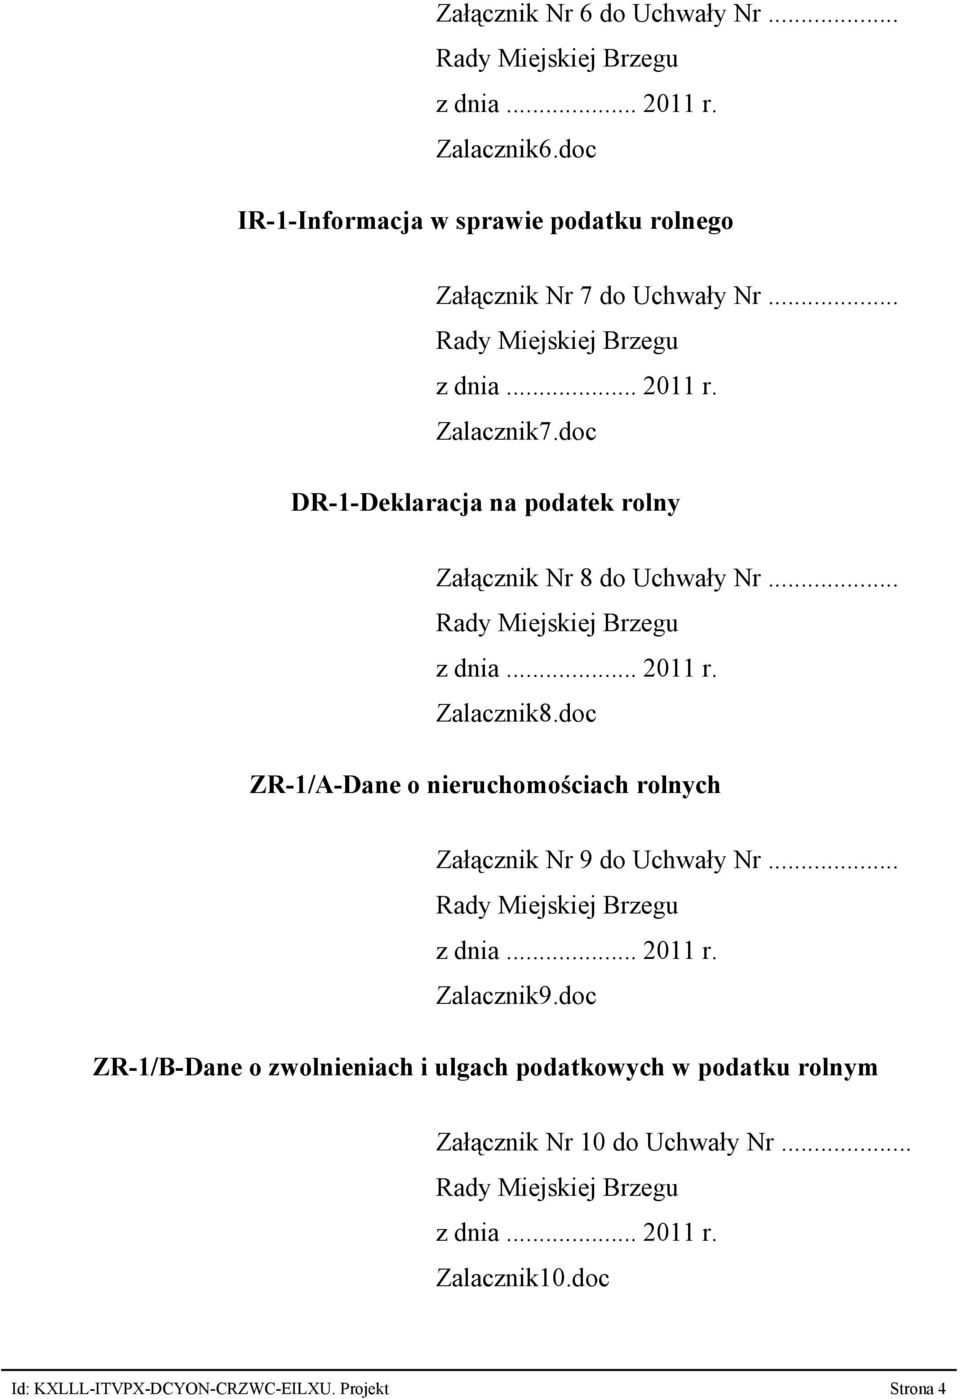 doc DR-1-Deklaracja na podatek rolny Załącznik Nr 8 do Uchwały Nr... Zalacznik8.